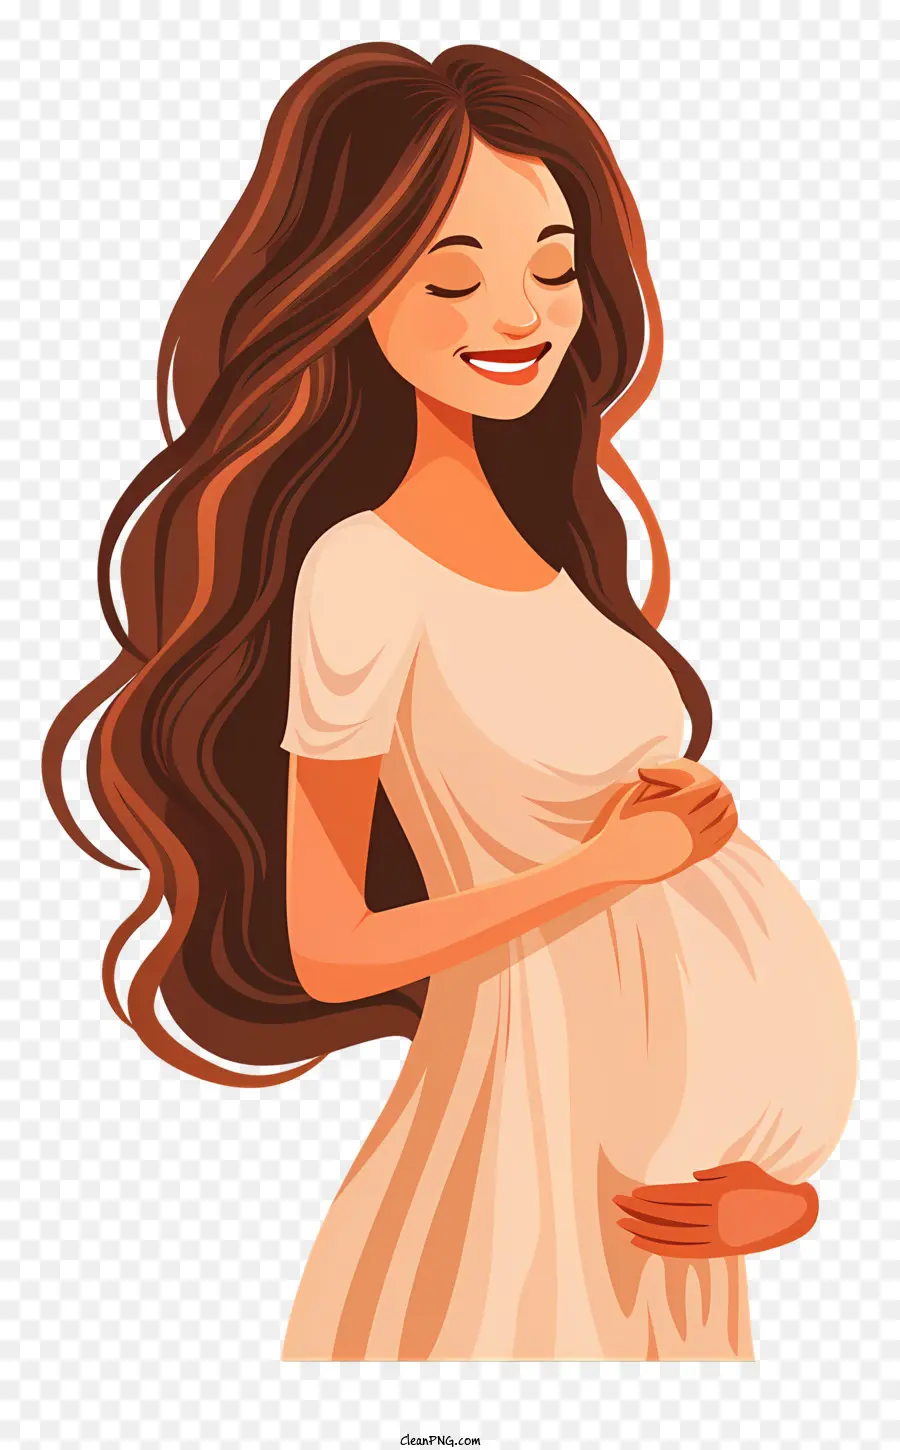 Schwangere Frau Cartoon Schwangerschaft Mutterschaft erwartet Mutterschaft - Cartoon schwangere Frau in weißem Kleid lächelnd